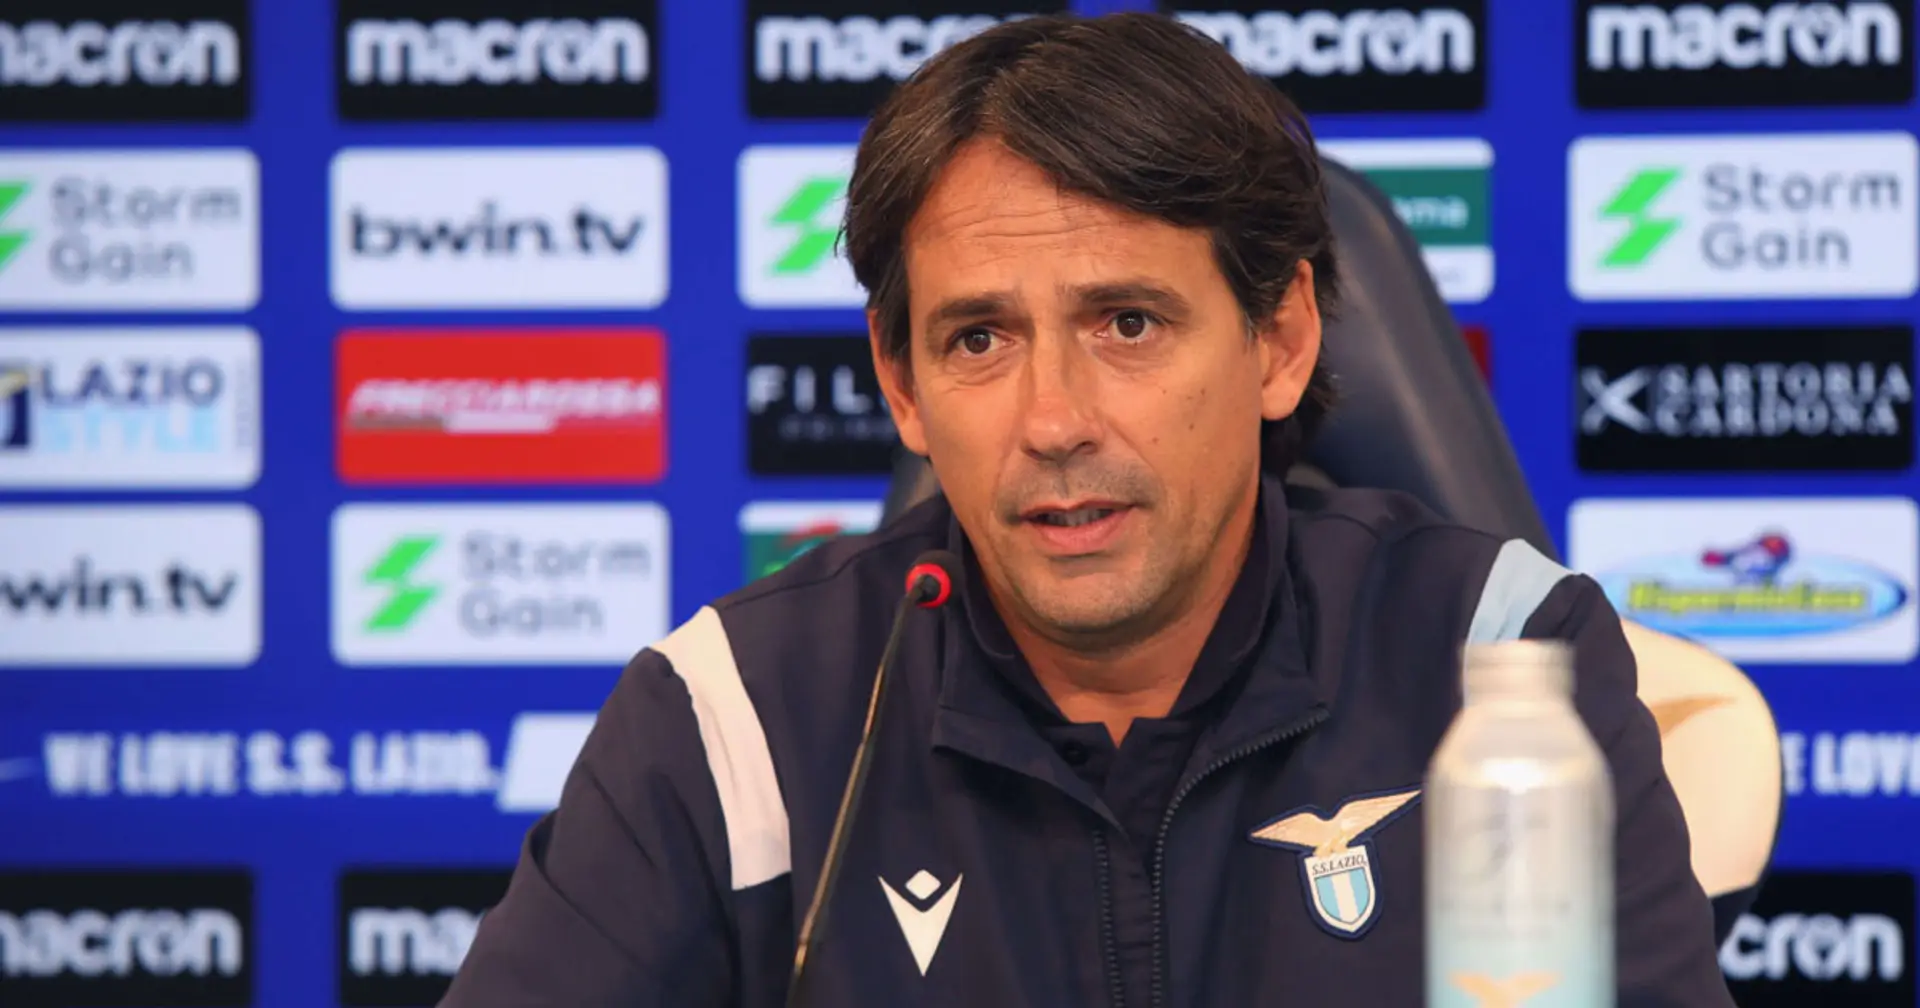 "Immobile e gli altri ci saranno, Lotito è rispettoso delle regole": Inzaghi prova a calmare le acque prima di Lazio-Juve